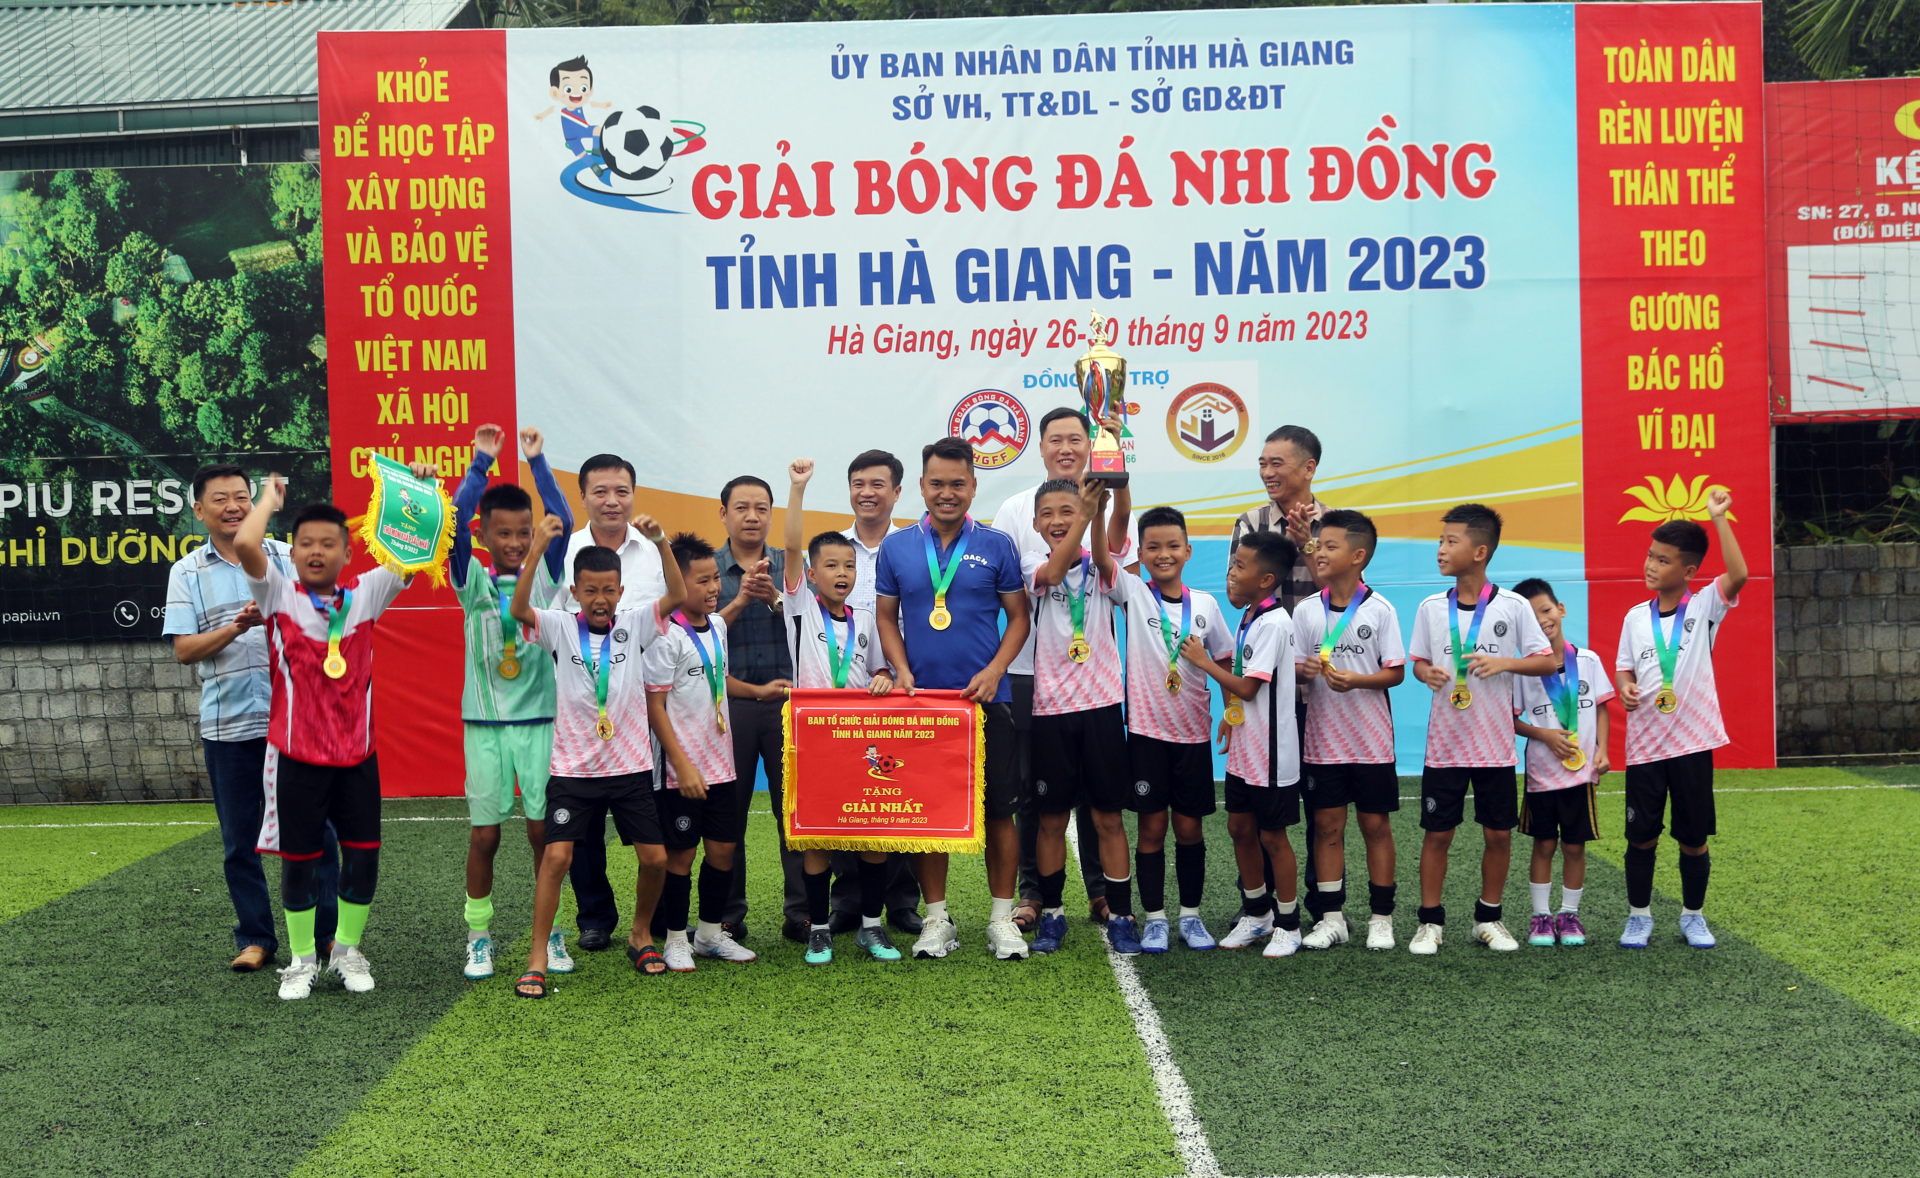 Ban tổ chức trao Cúp vô địch Giải bóng đá Nhi đồng tỉnh Hà Giang cho đội Quang Bình.